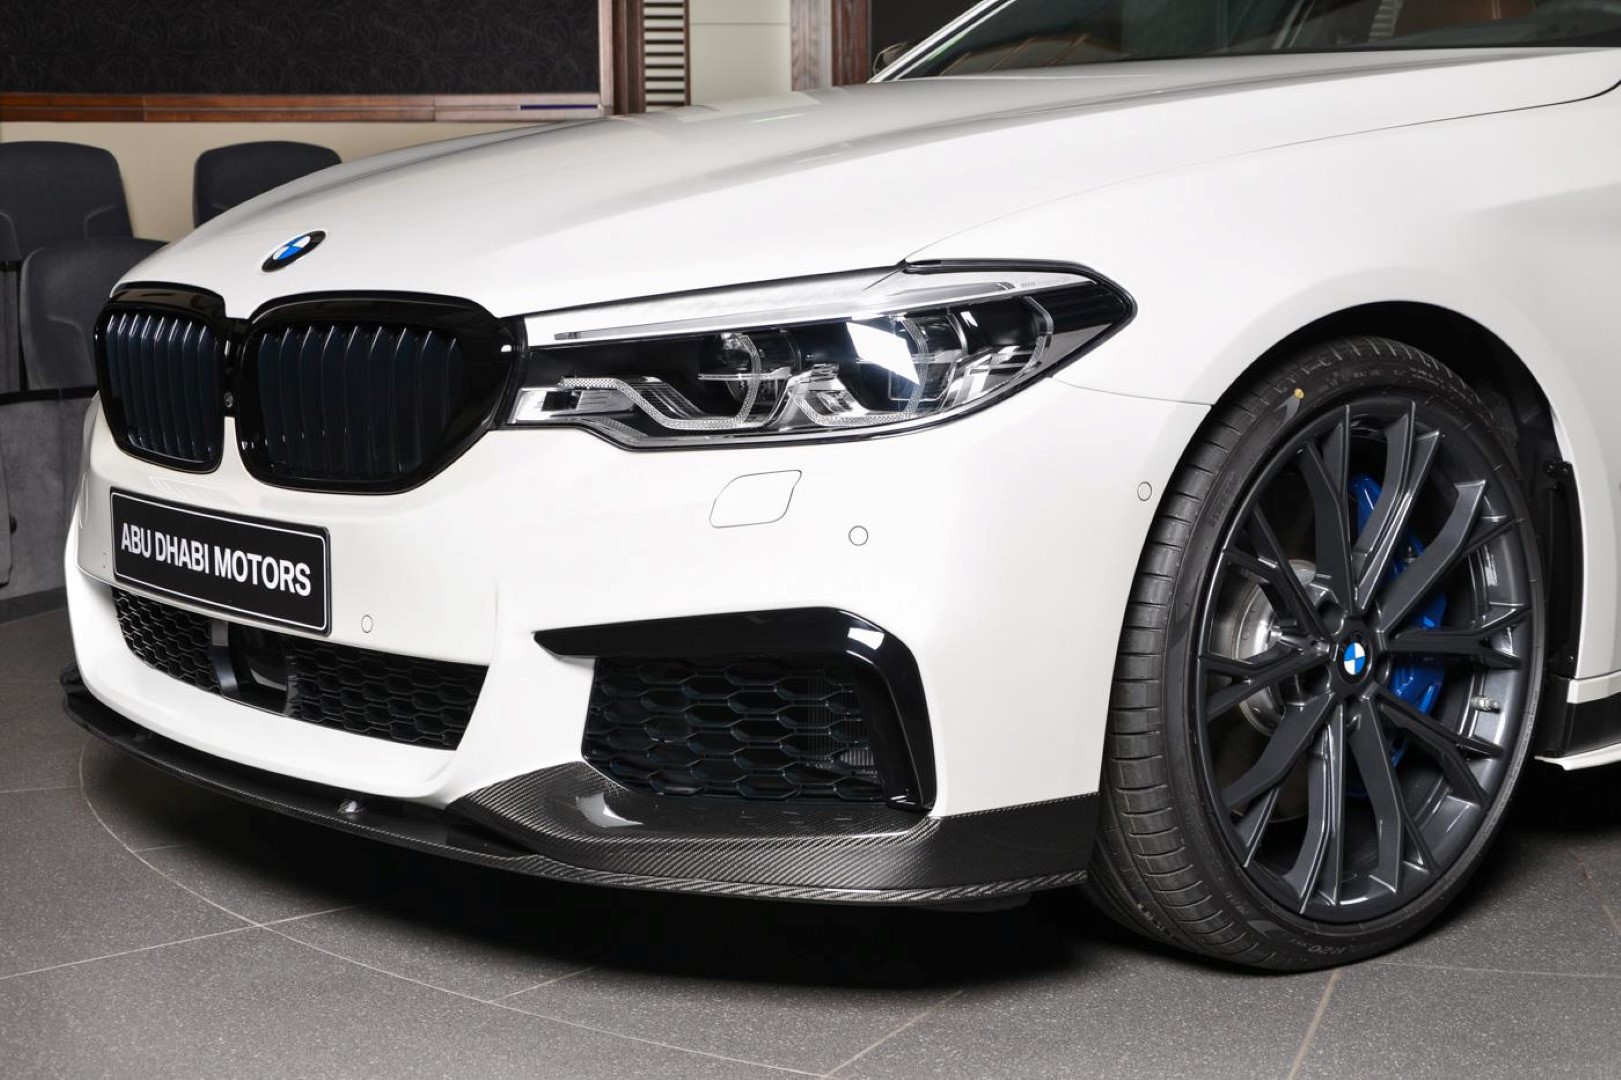 G performance. BMW m550i m Performance. BMW 550 M Performance. BMW g30 перфоманс. BMW g30 m Performance 2021.